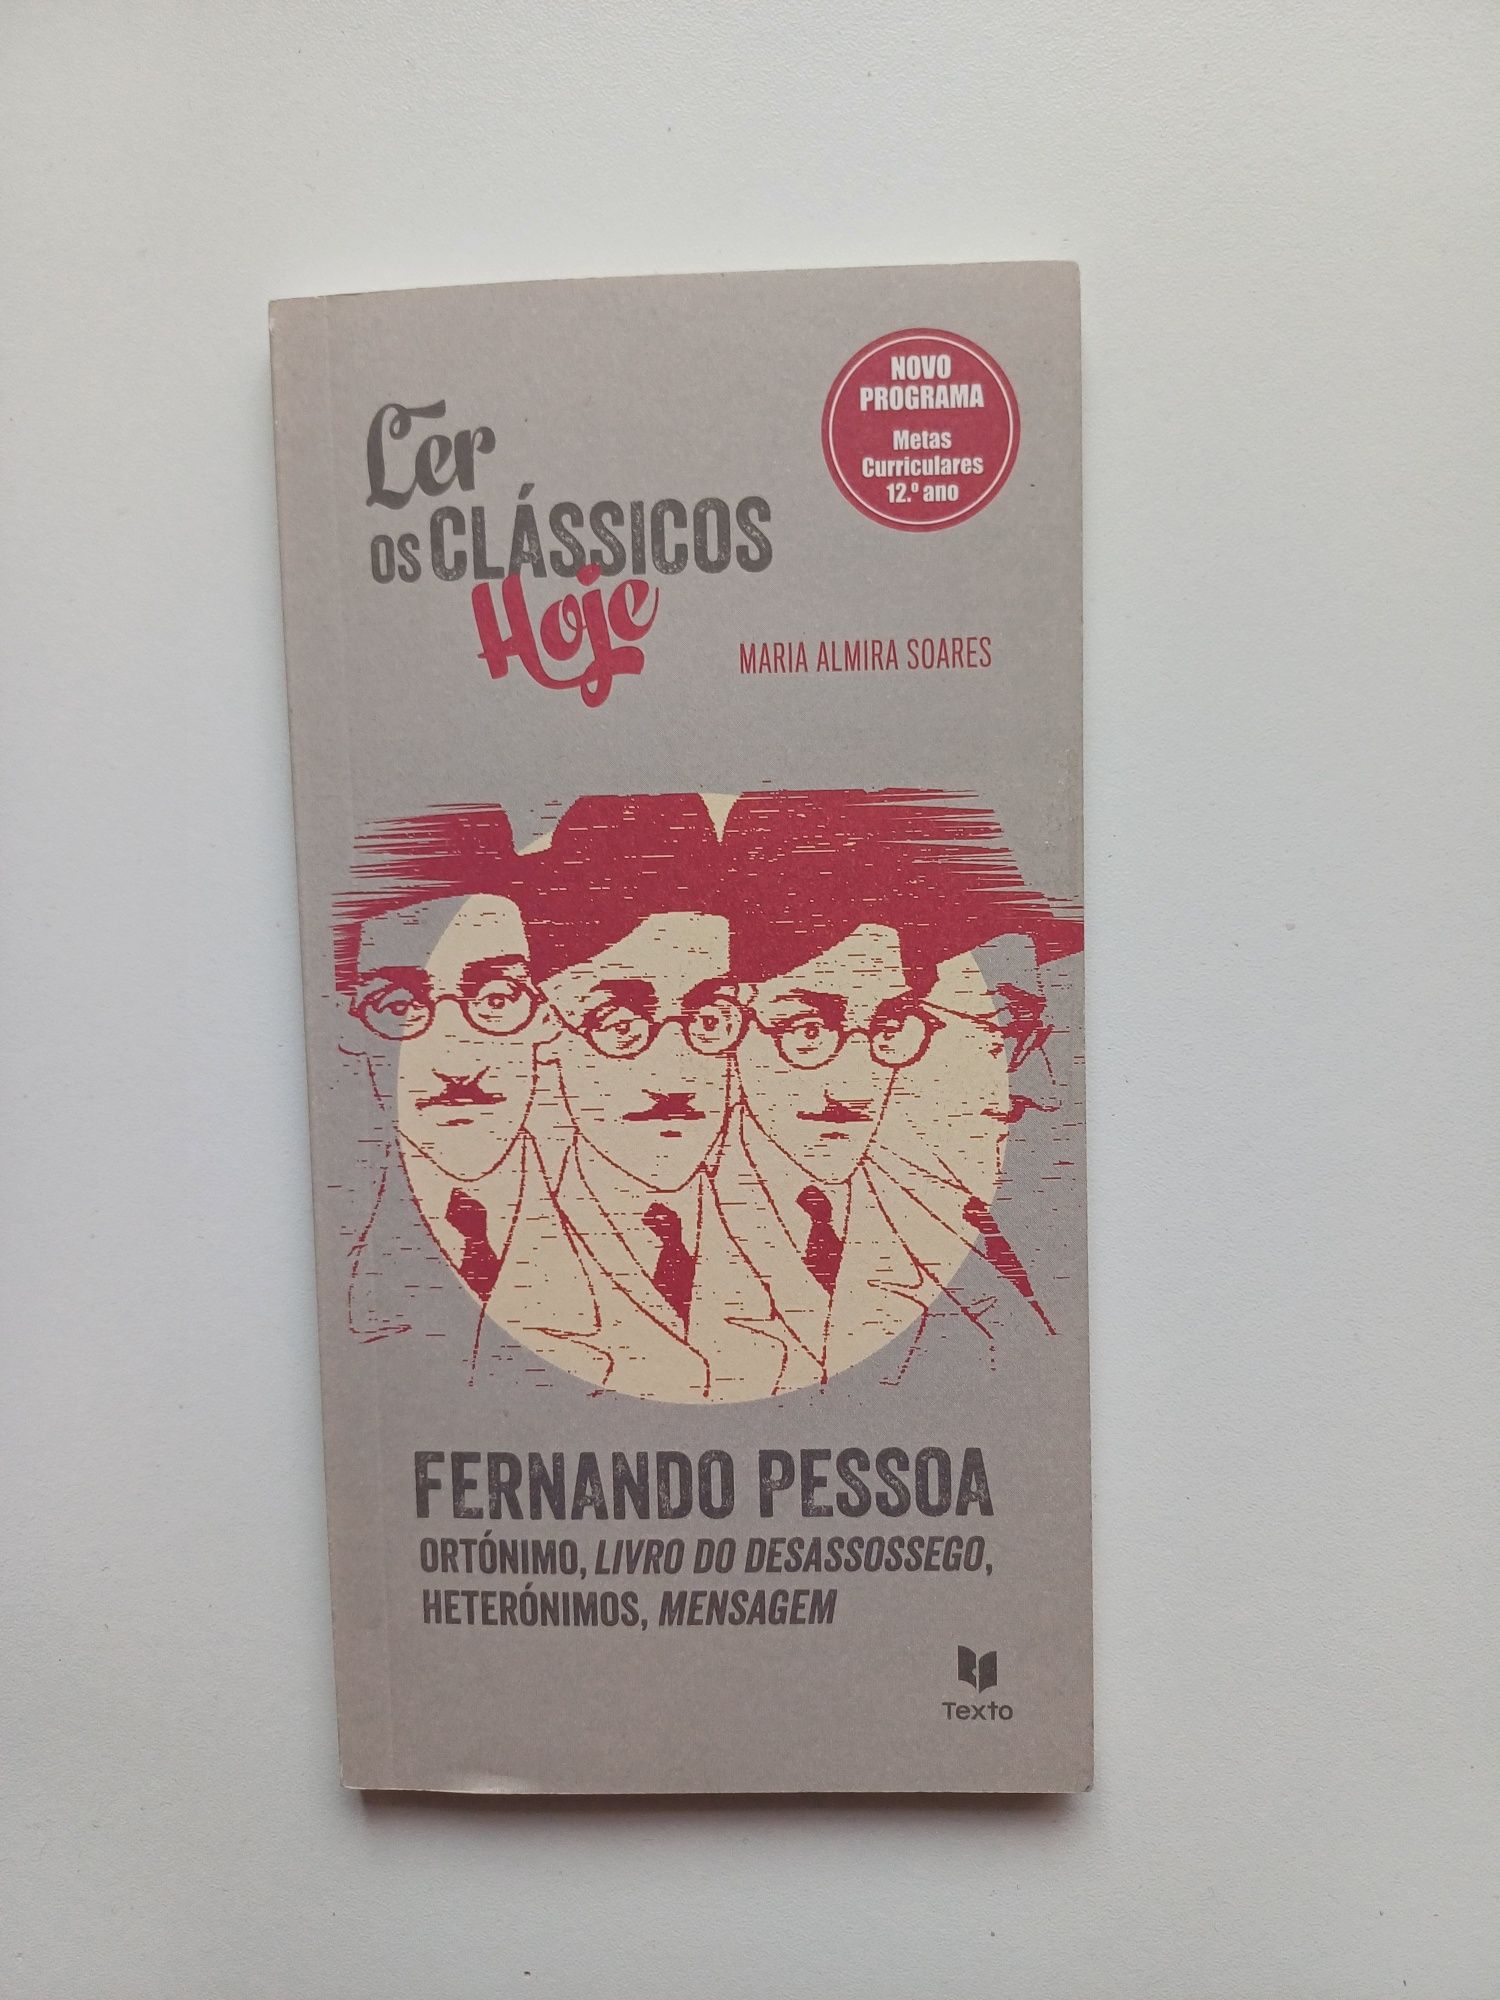 Fernando Pessoa - Ler os Clássicos de Hoje